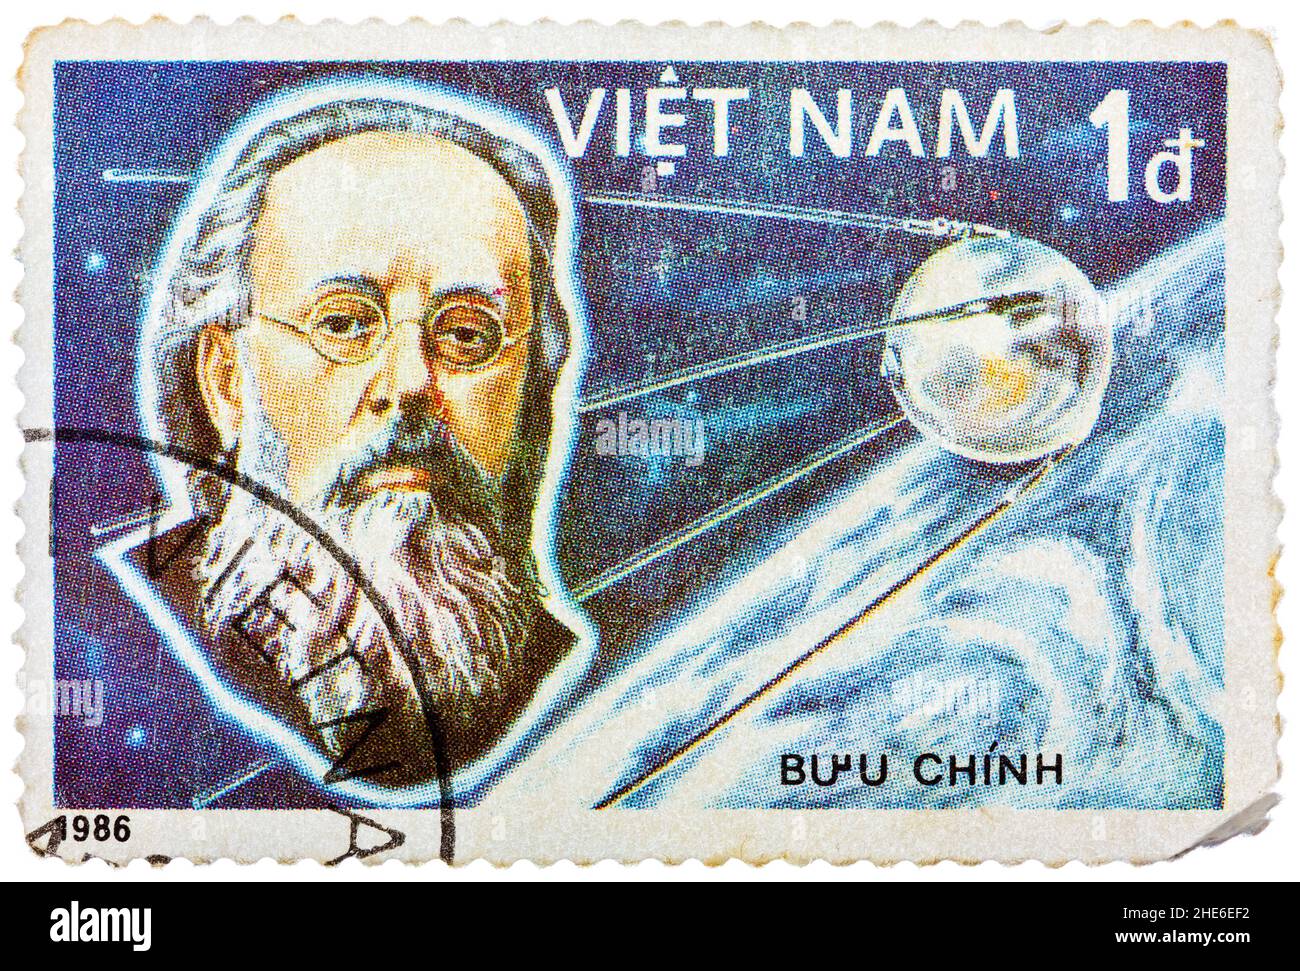 Stempel in Vietnam zeigt Konstantin Tsiolkovsky, 1. Bemannte Raumfahrt, 25. Jahrestag Stockfoto